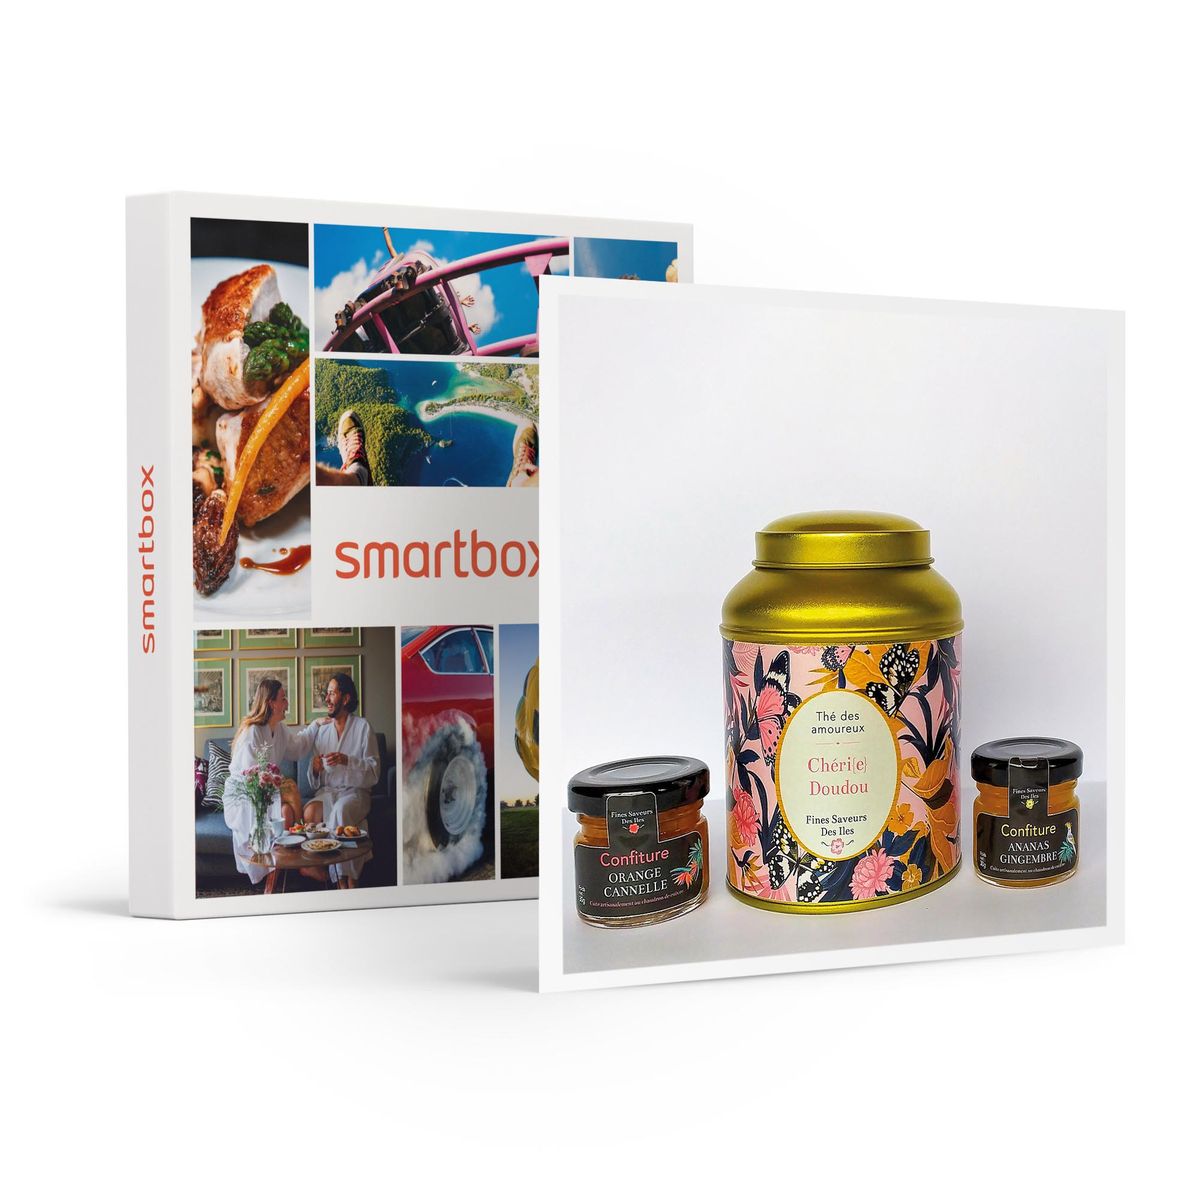 Coffret des amoureux composé de thé parfumé et de confitures artisanales -  smartbox - coffret cadeau sport et aventure Smartbox